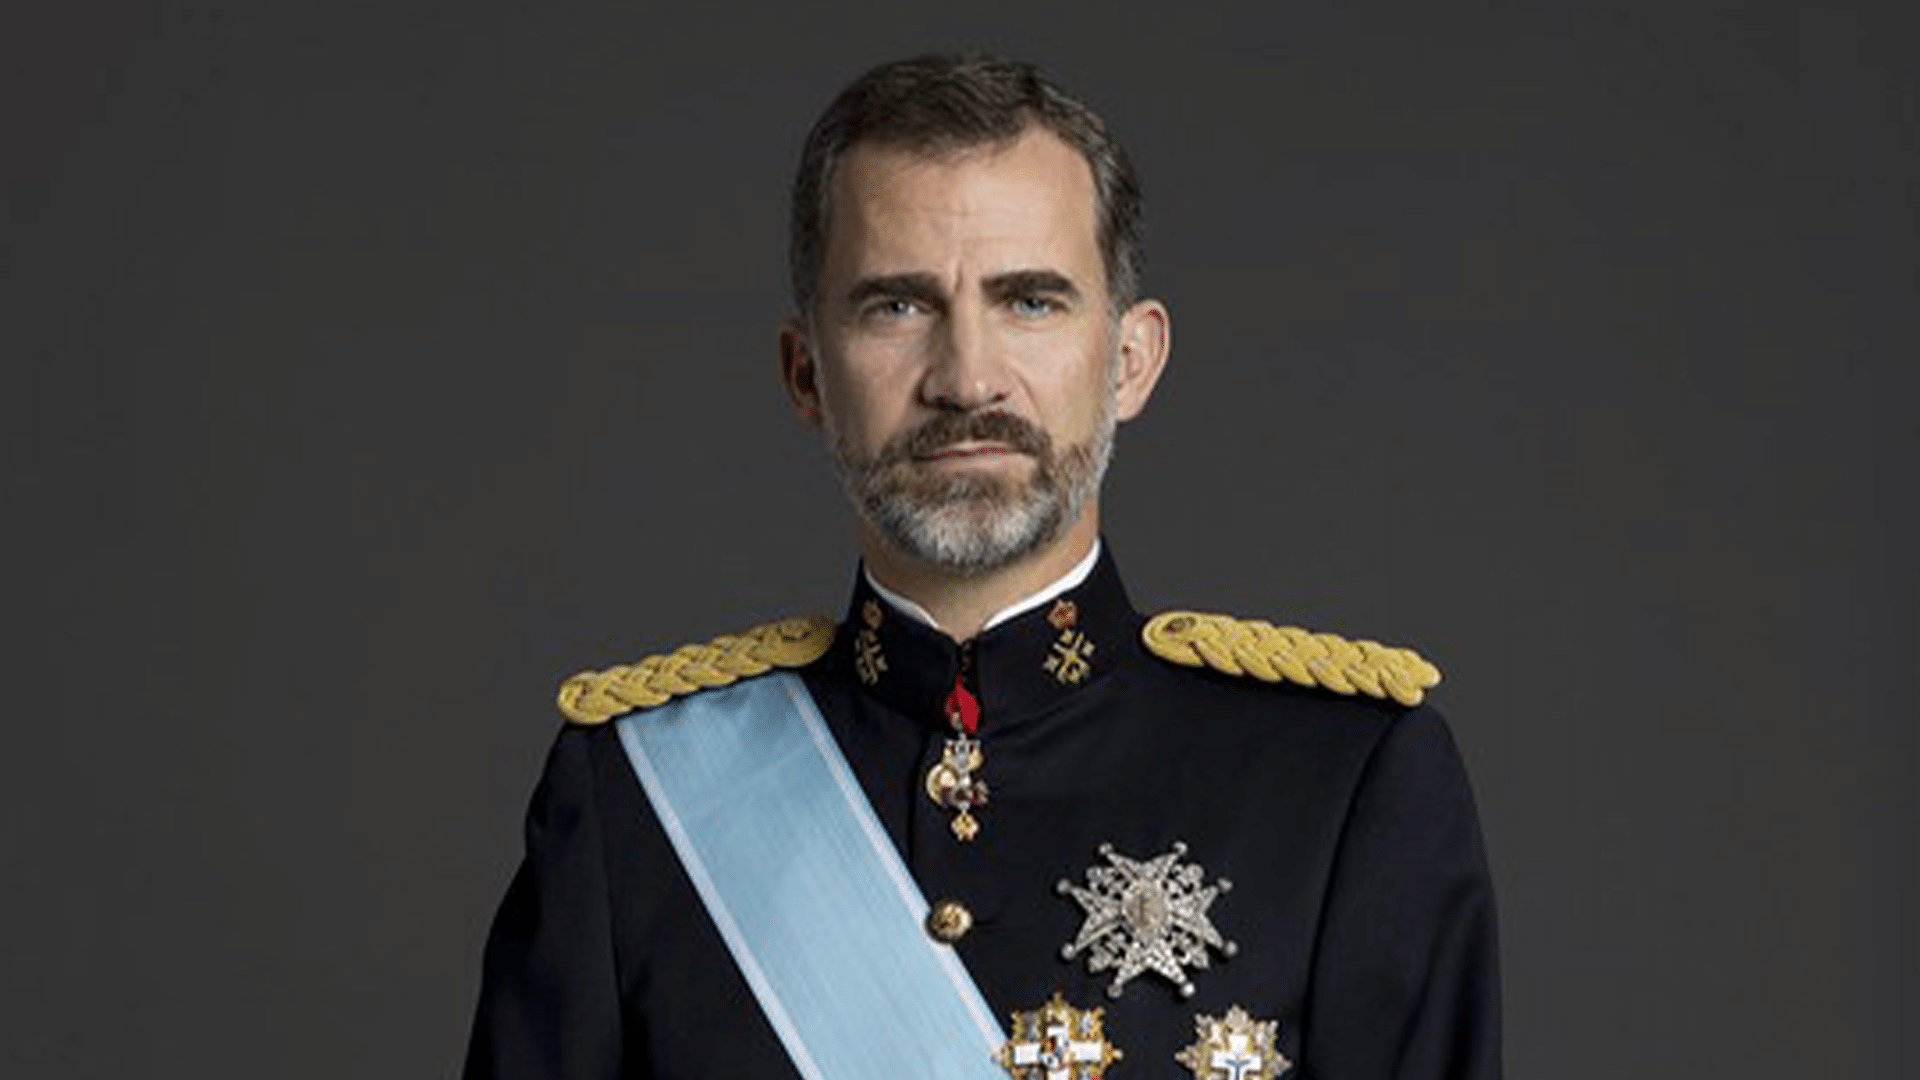 NEOS celebra la decisión de Felipe VI de hacer público su patrimonio